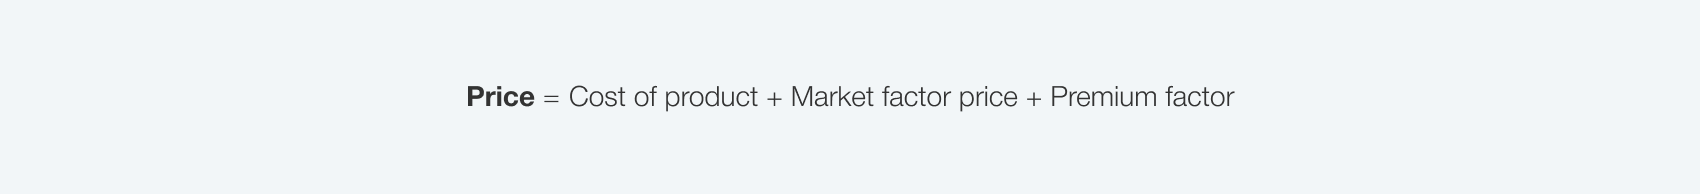 market-based-pricing-formula